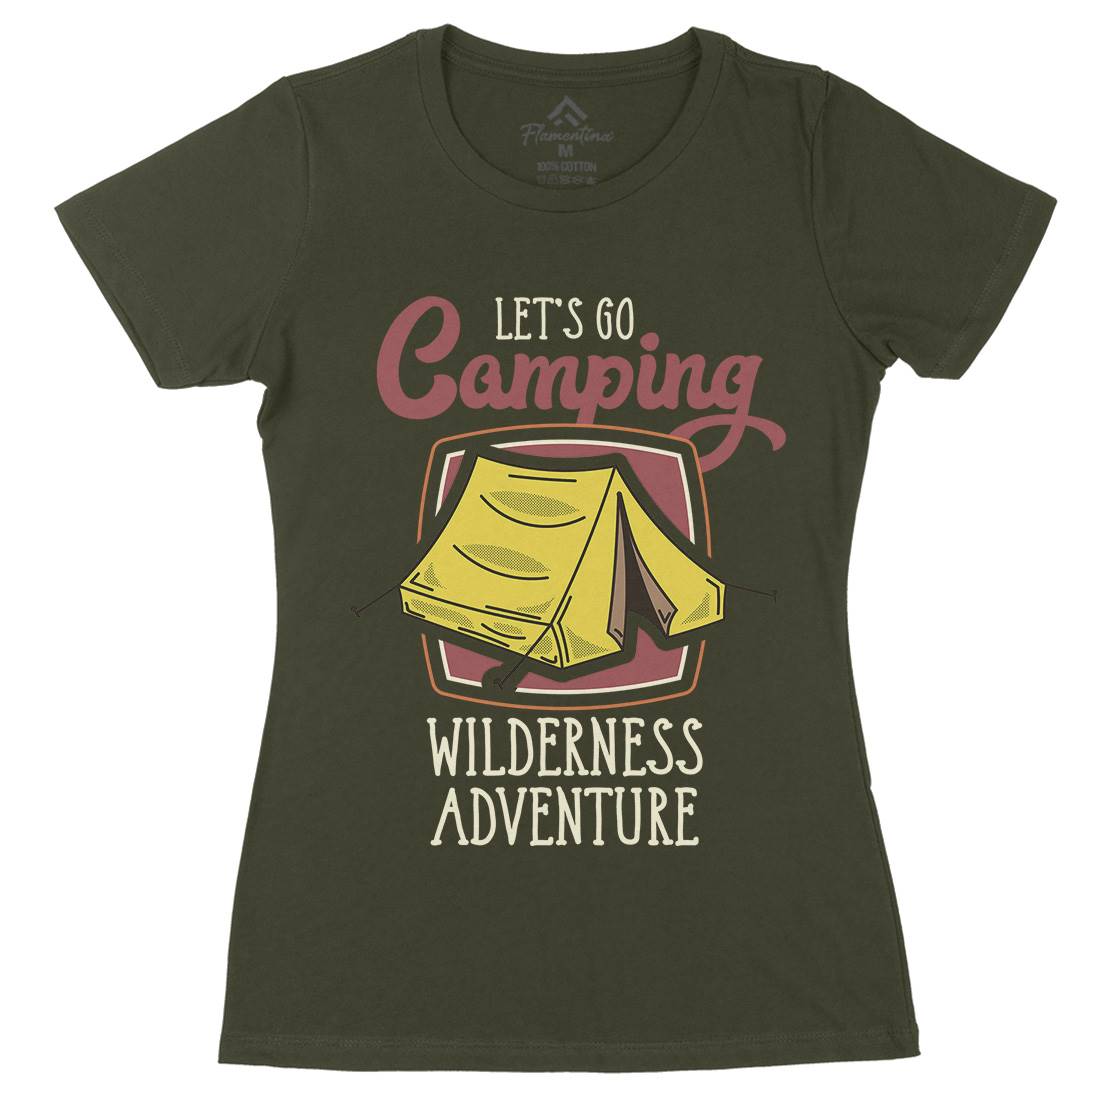 Wilderness Adventure Womens Organic Crew Neck T-Shirt Nature D998